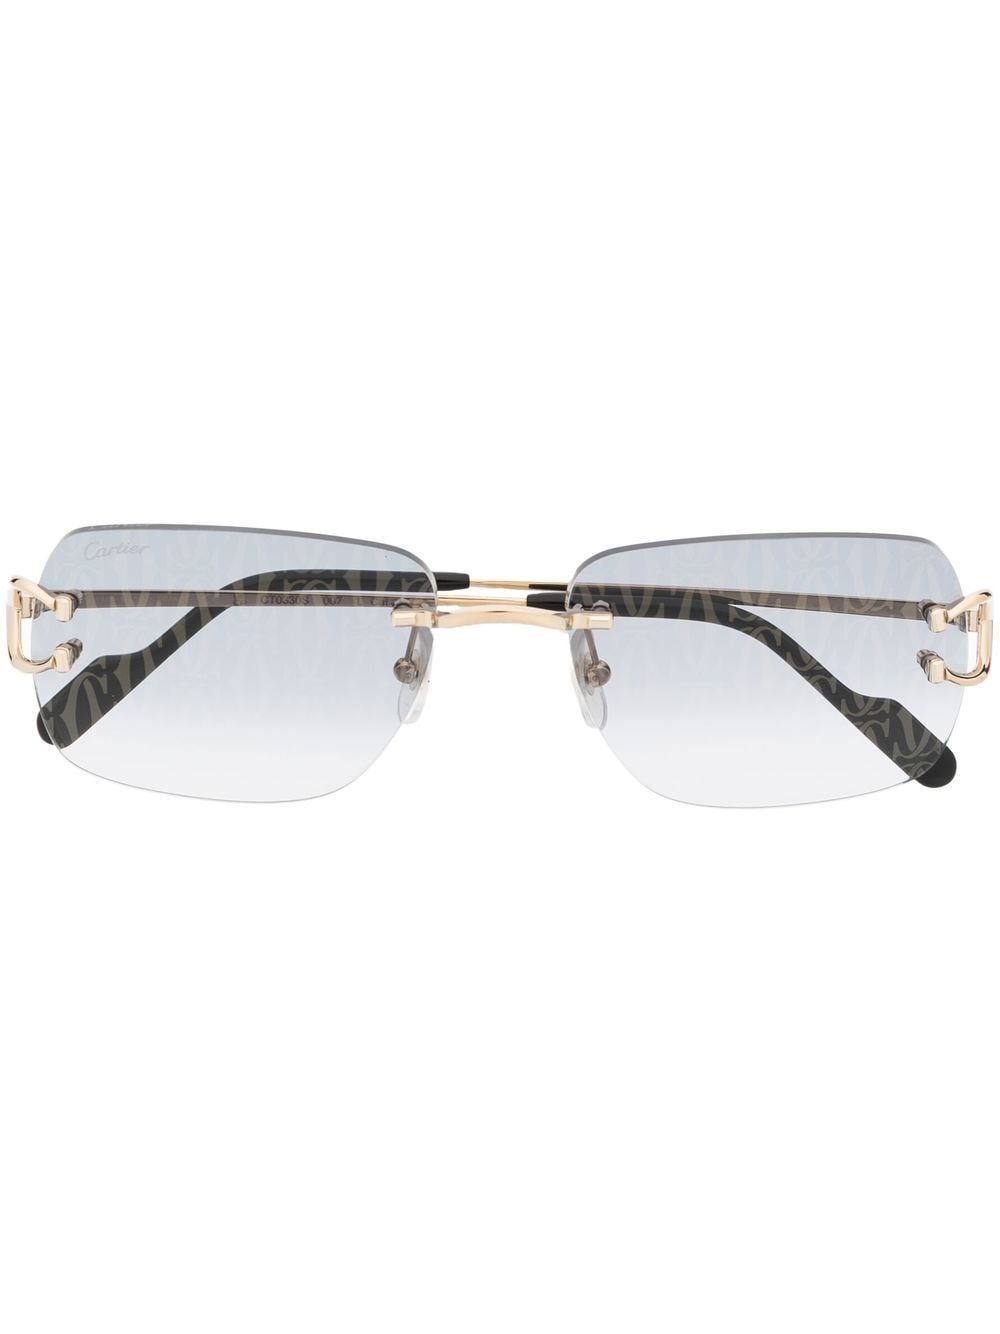 Image 1 of Cartier Eyewear solglasögon med linsdetalj